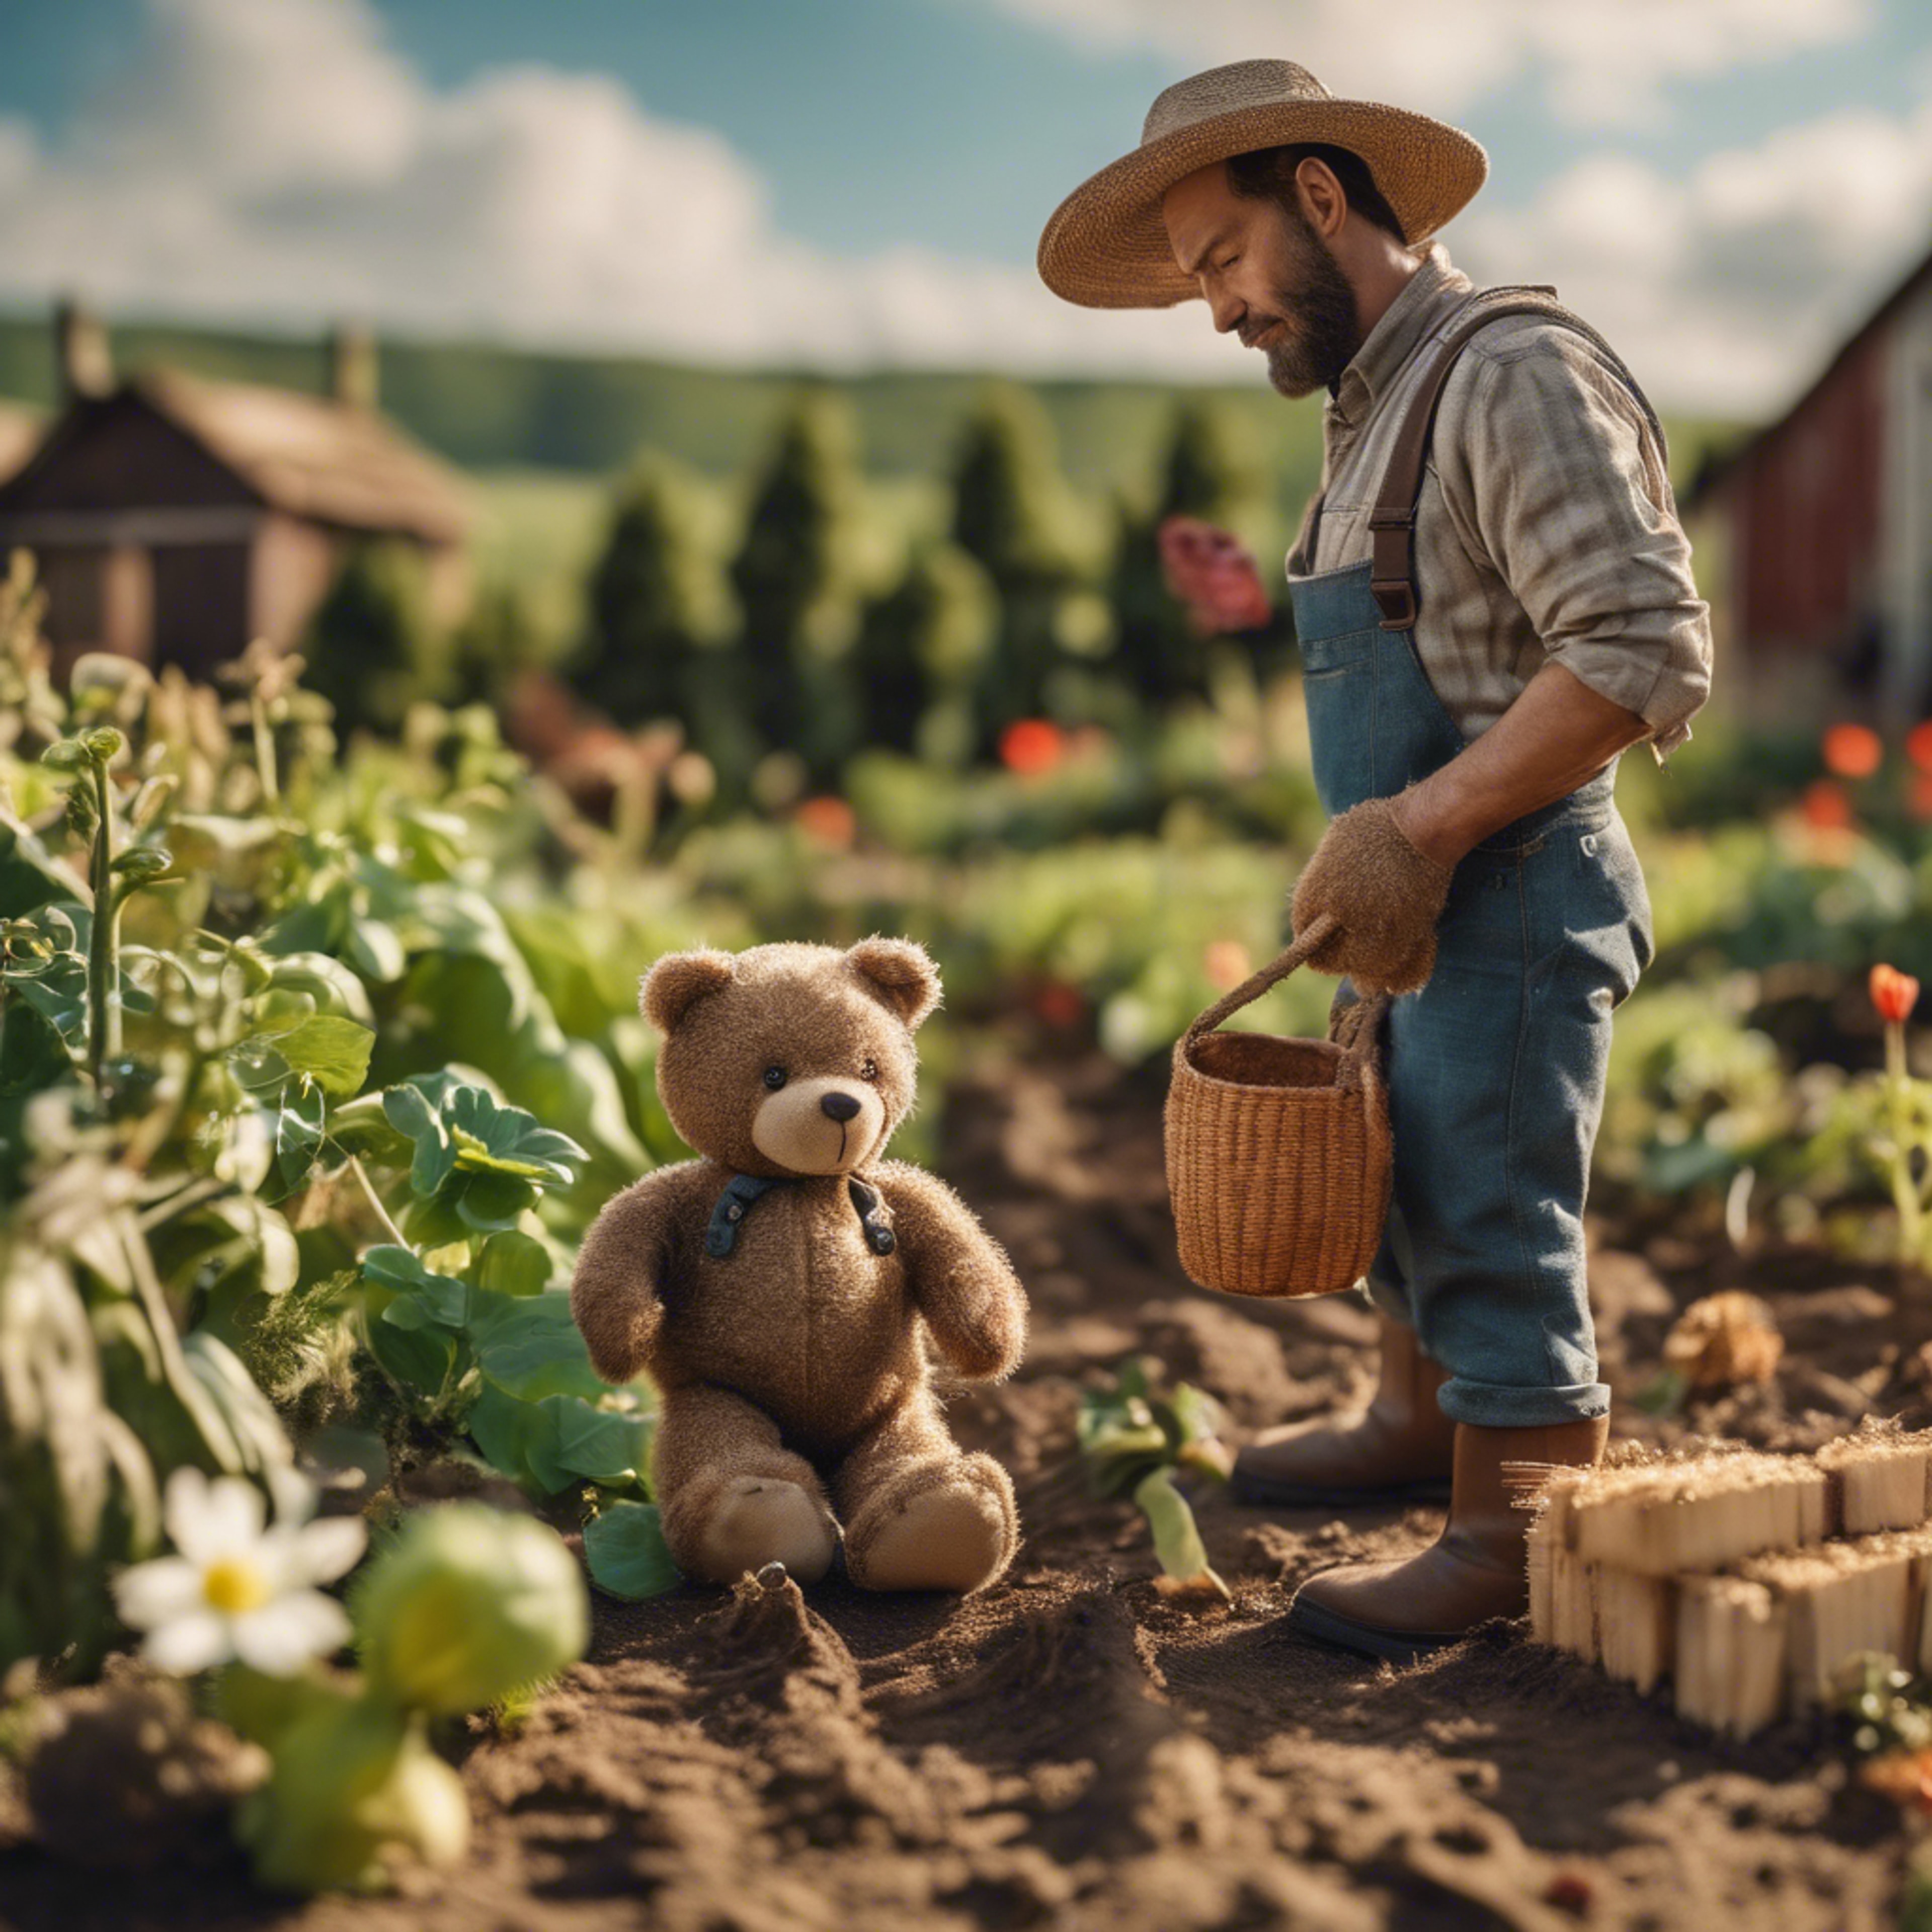 A teddy bear farmer tending to a bountiful crop in a miniature farmland setting.壁紙[04c0cfe7f7e94efb93c5]